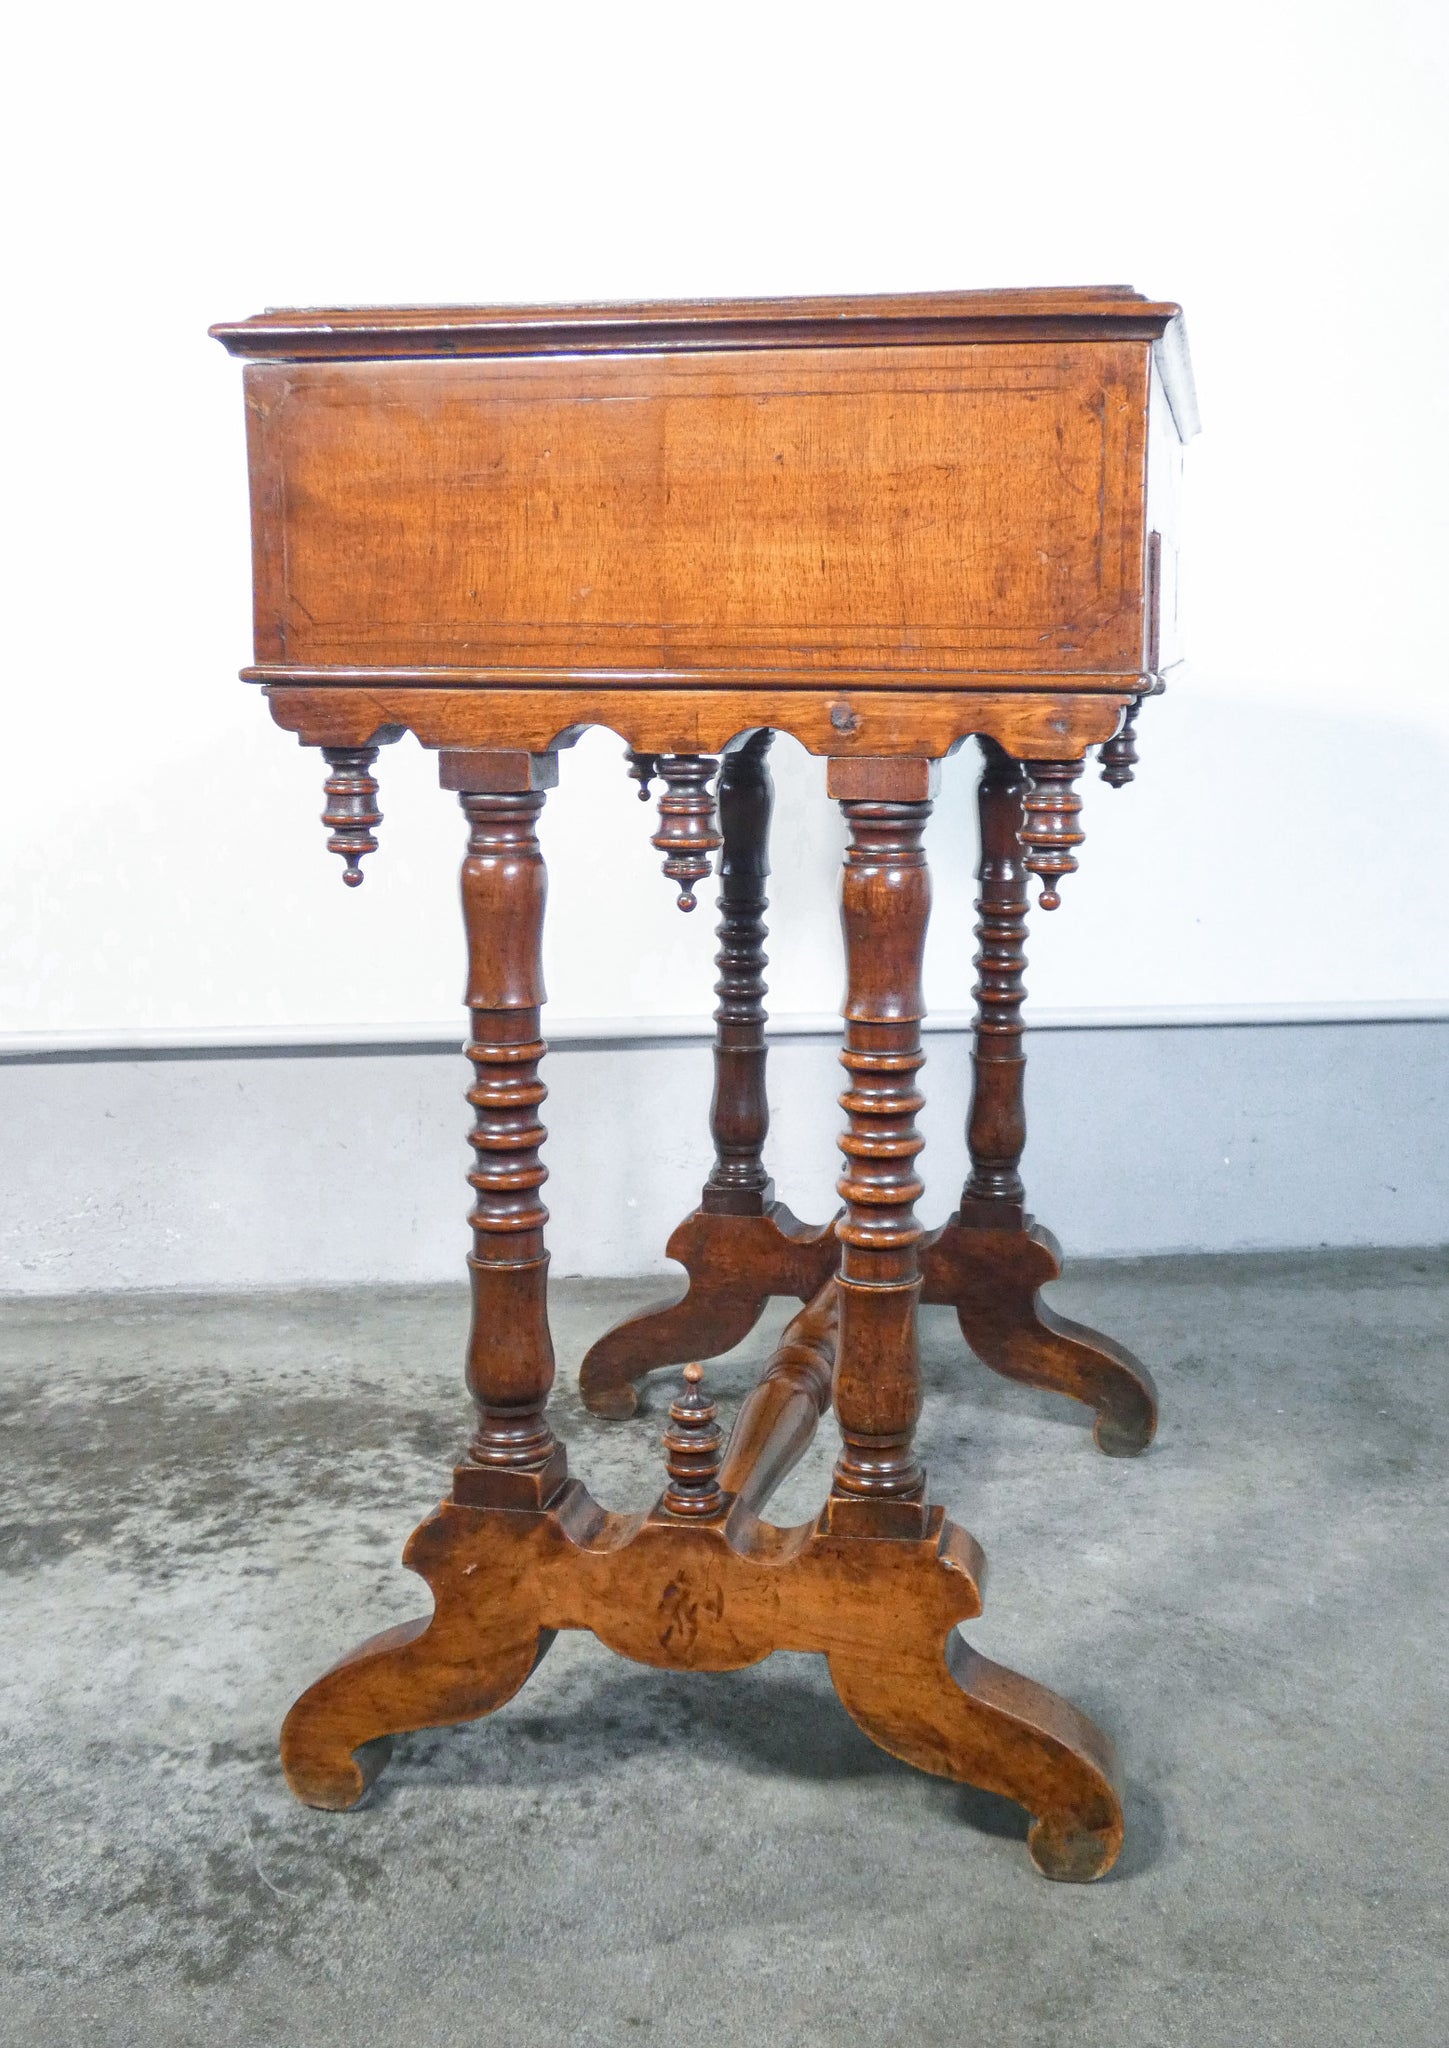 tavolino lavoro tricoteuse epoca 1800 legno noce piano apribile cassetto antico